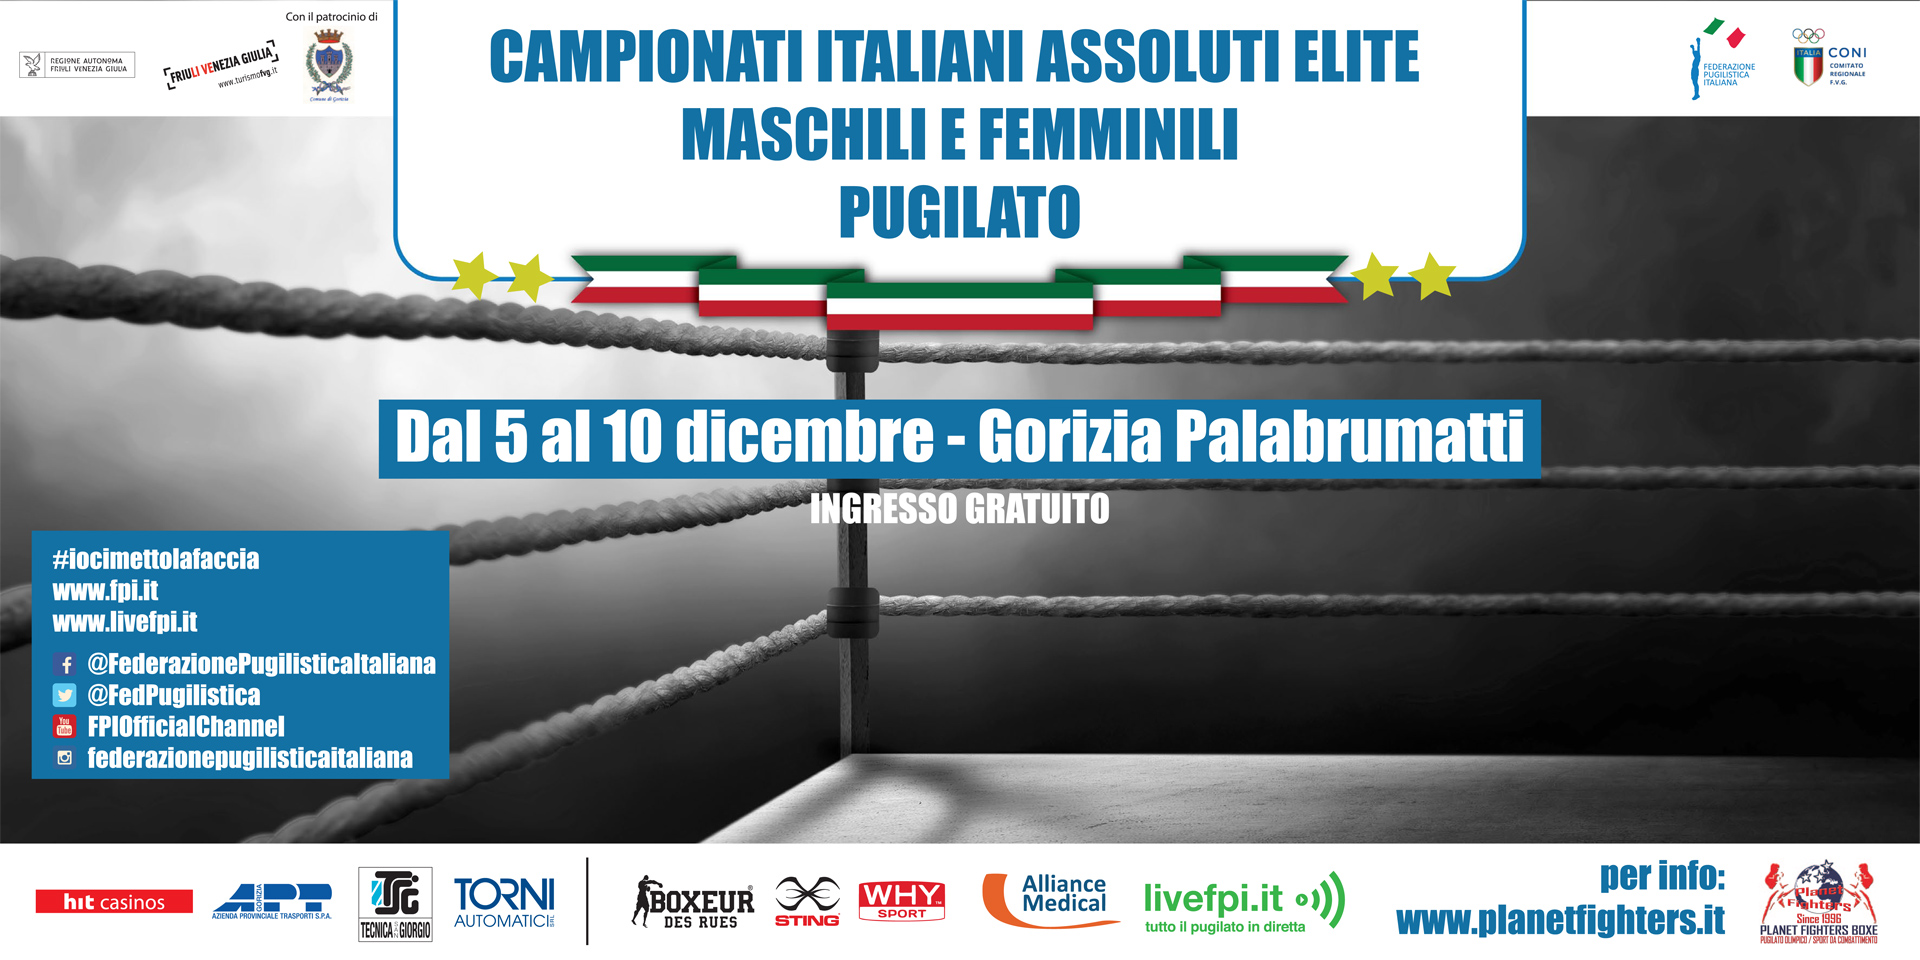 Lunedì 27 Novembre a Gorizia la Presentazione dei Campionati Nazionali Assoluti 2017, per la FPI presenti il Consigliere Rosa e Maurizio Stecca #Assoluti2017